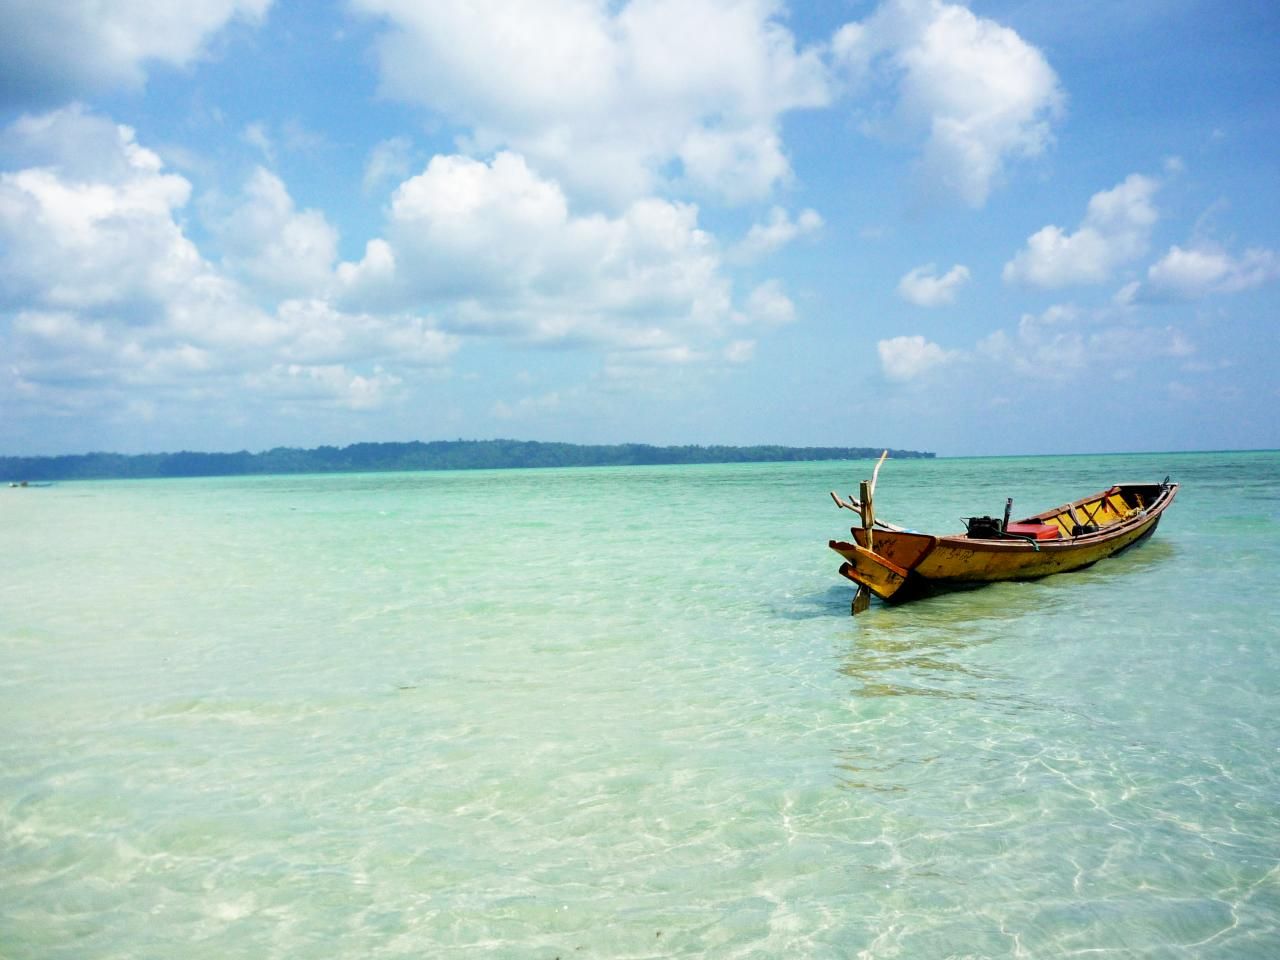 Андаманские острова фото